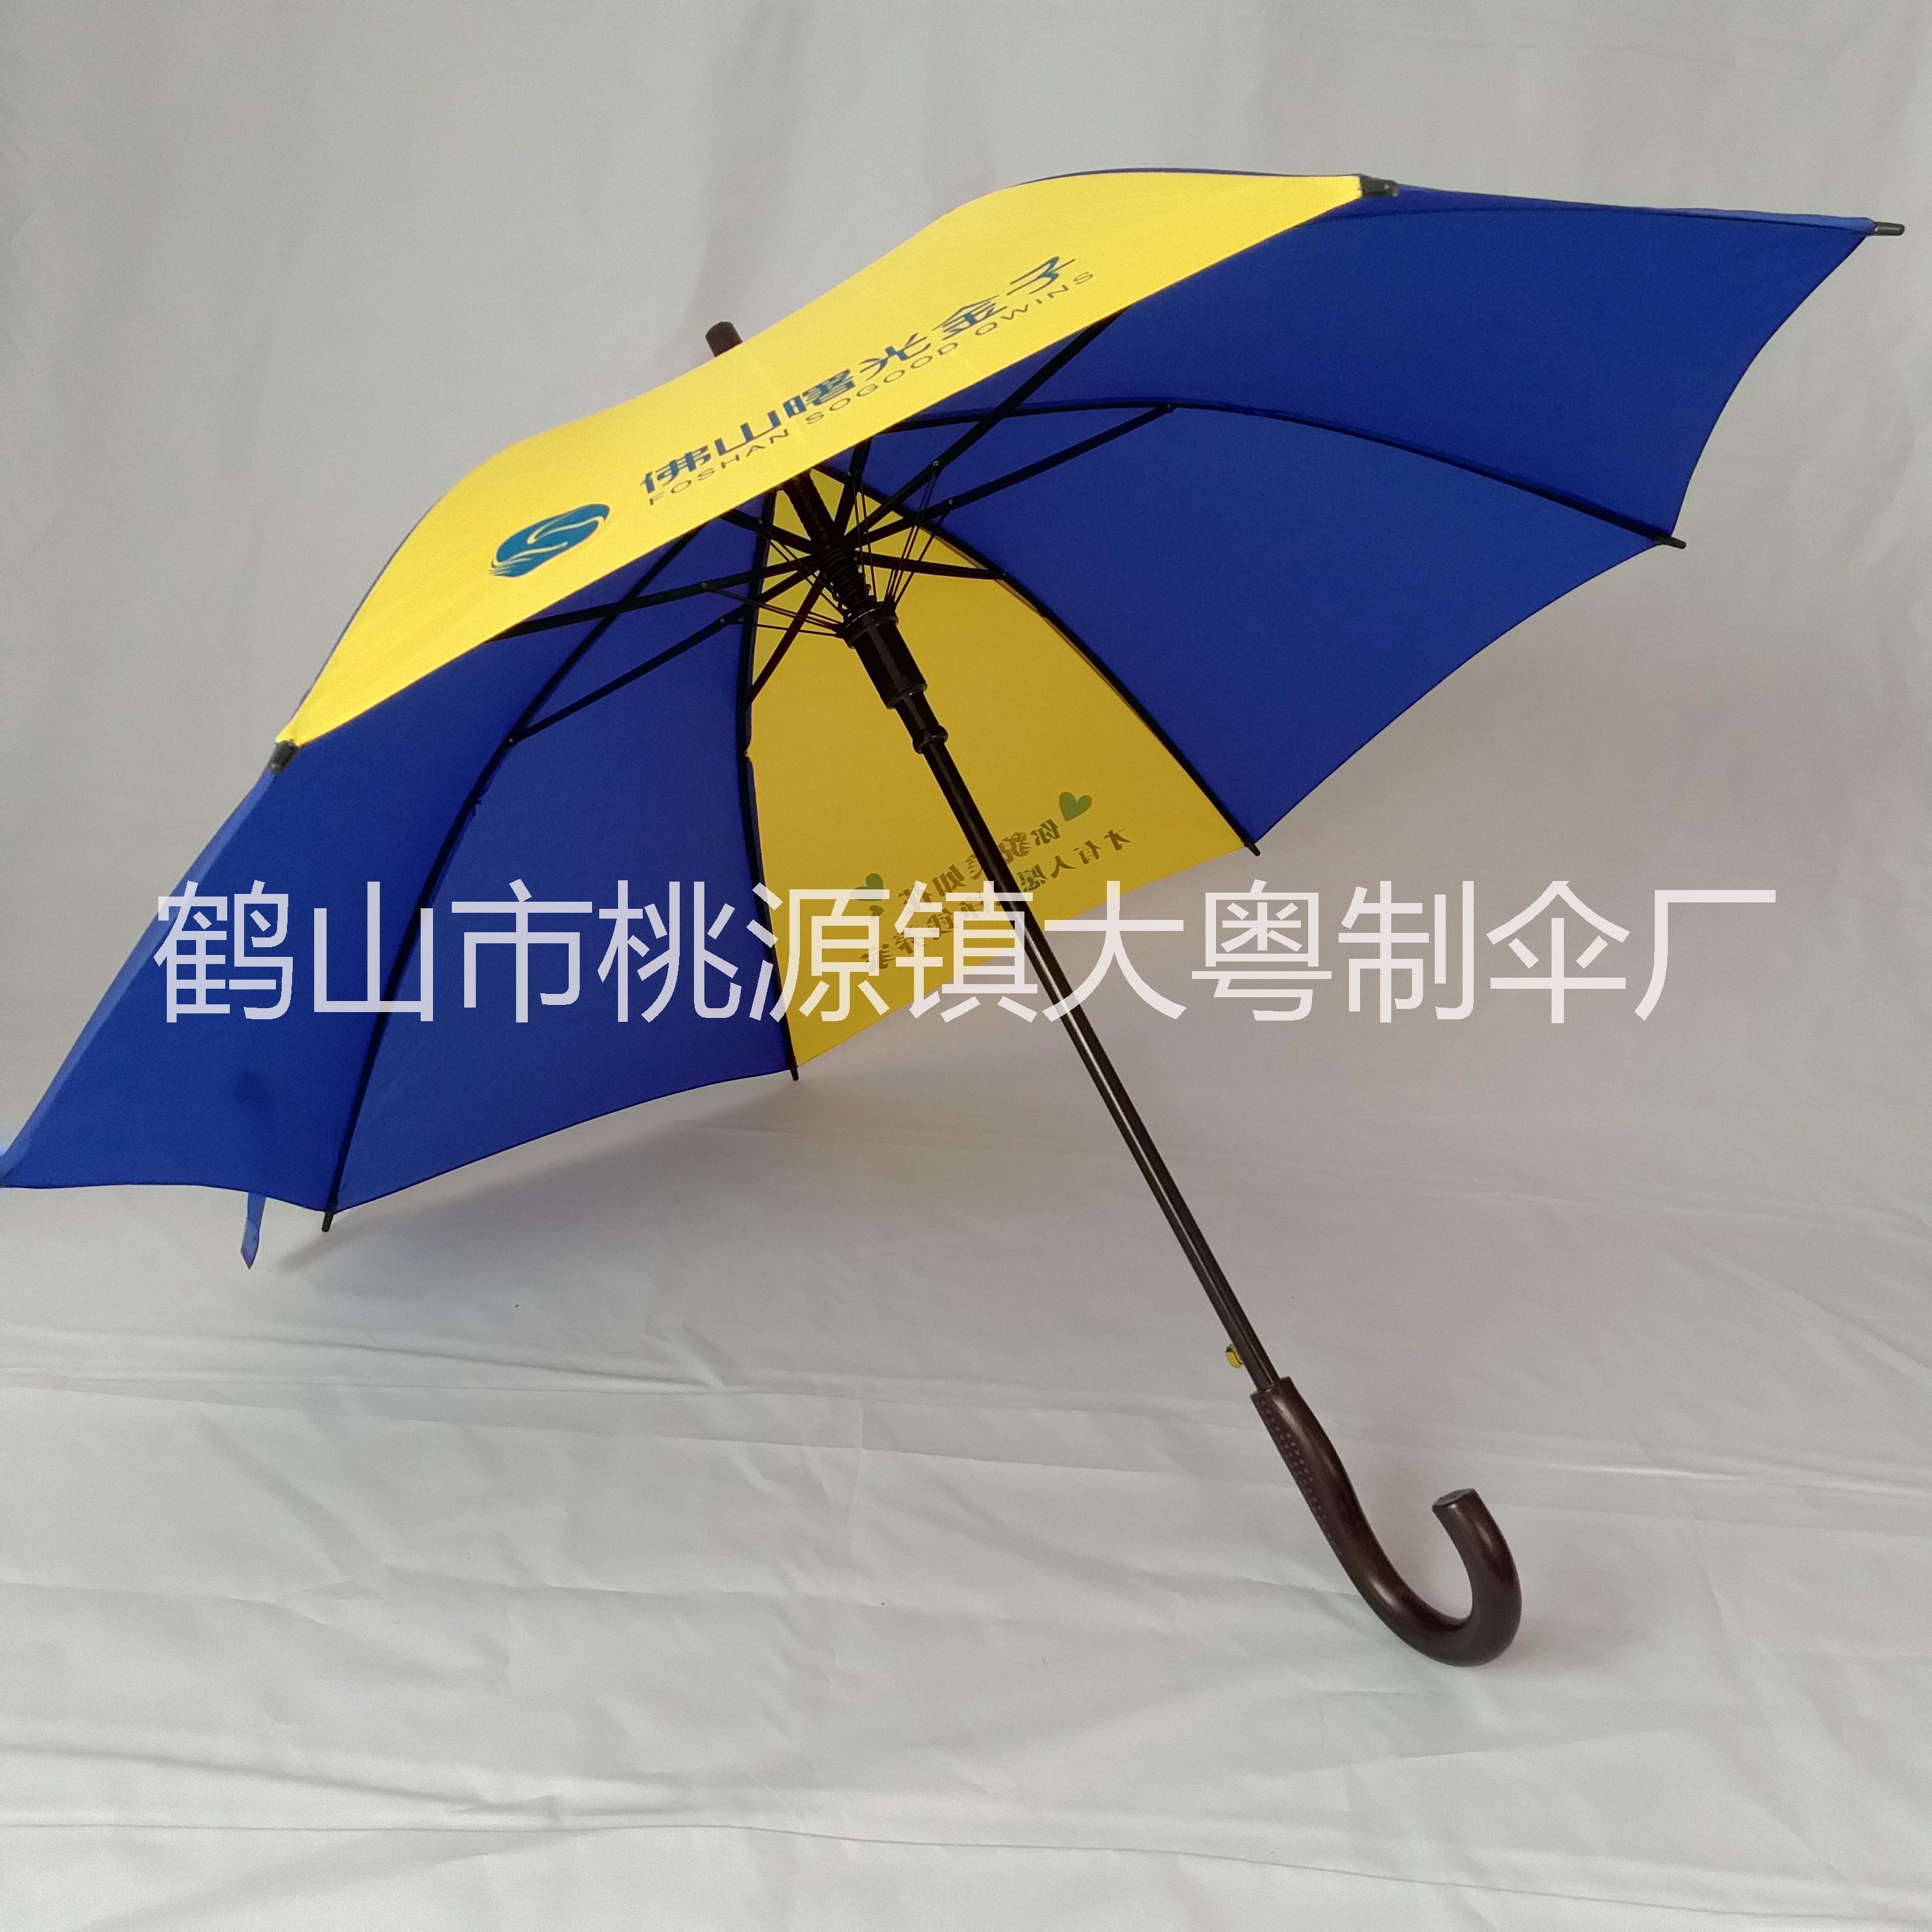 广州雨伞厂家 供应各种广告雨伞 雨伞定制LOGO 雨伞印刷广告词 广告伞订制 送货上门图片